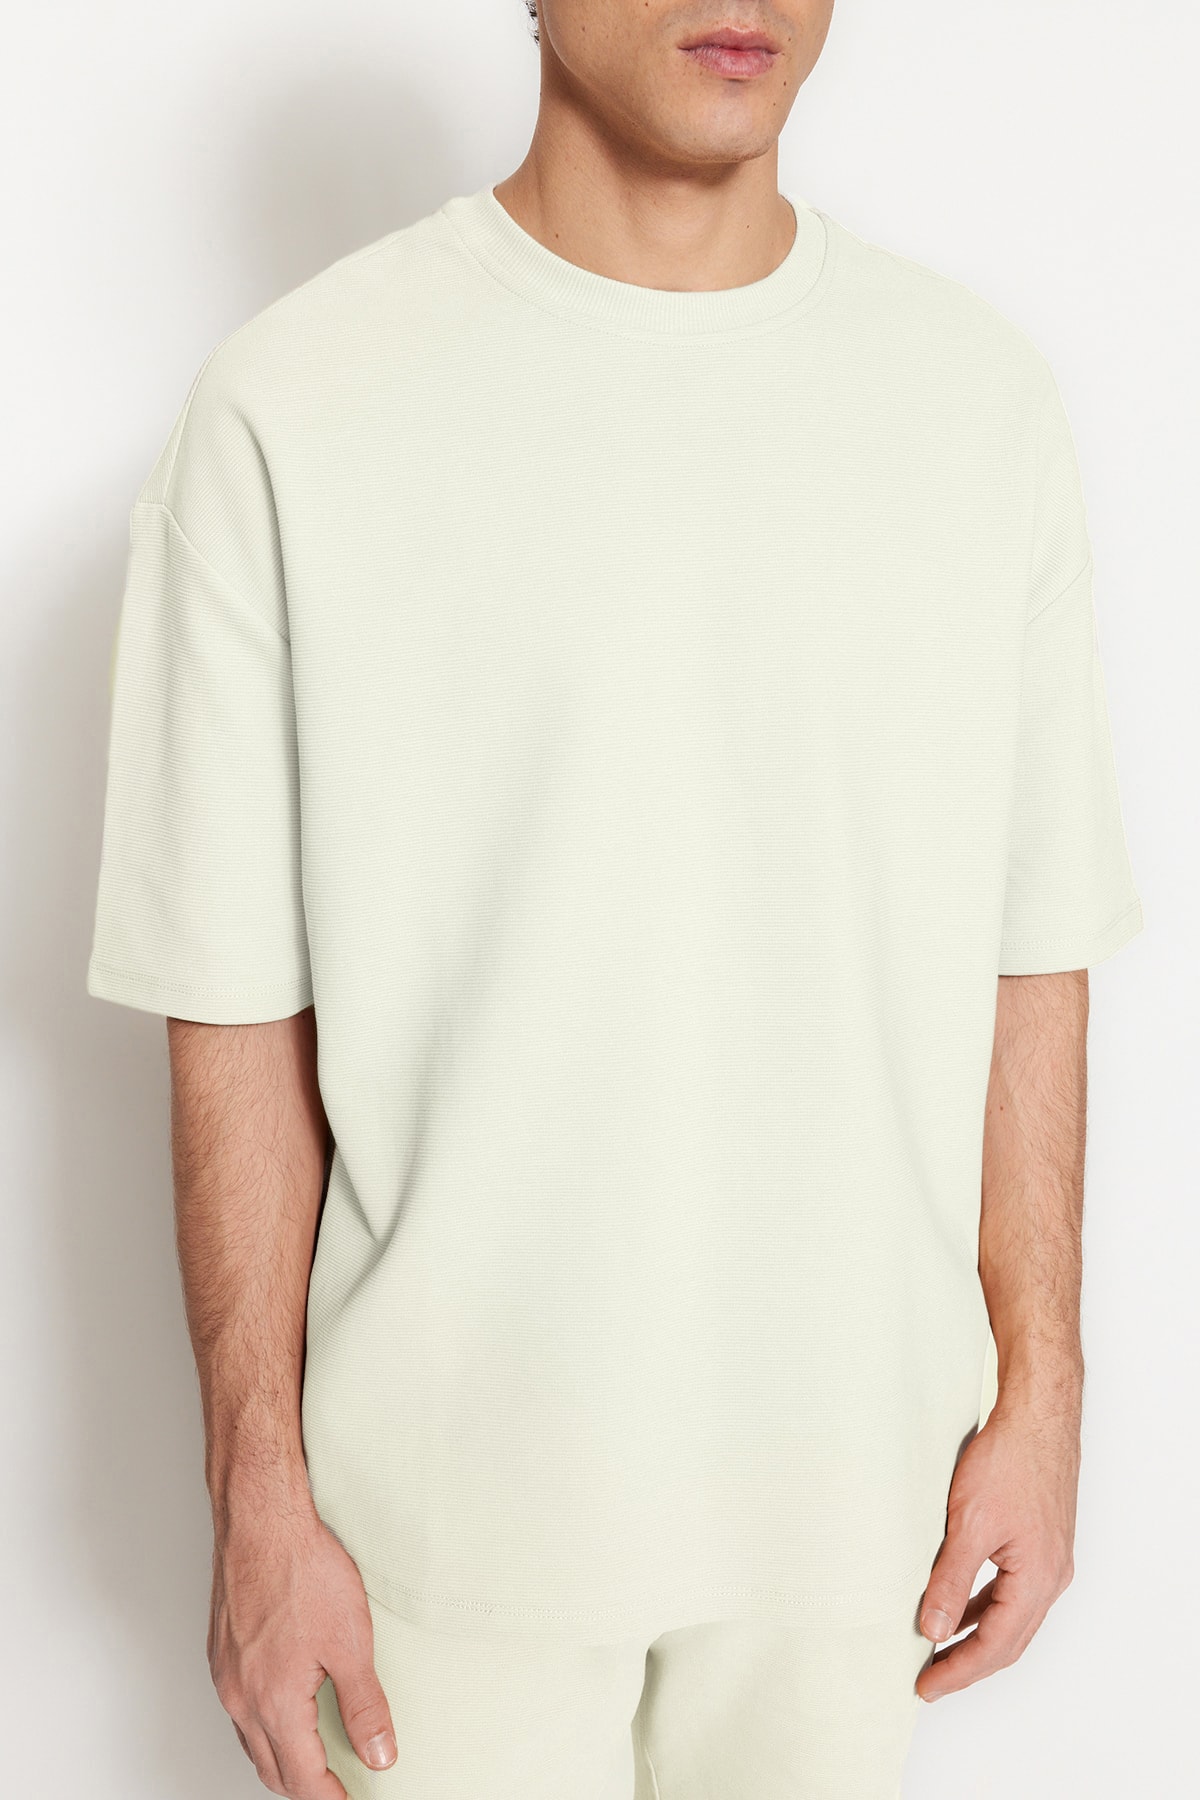 Trendyol Collection Struktur aus in Herren-T-Shirt limitierter % Trendyol 100 Ecrufarbenes in - Premium-Baumwolle Übergröße/Weitschnitt Auflage mit